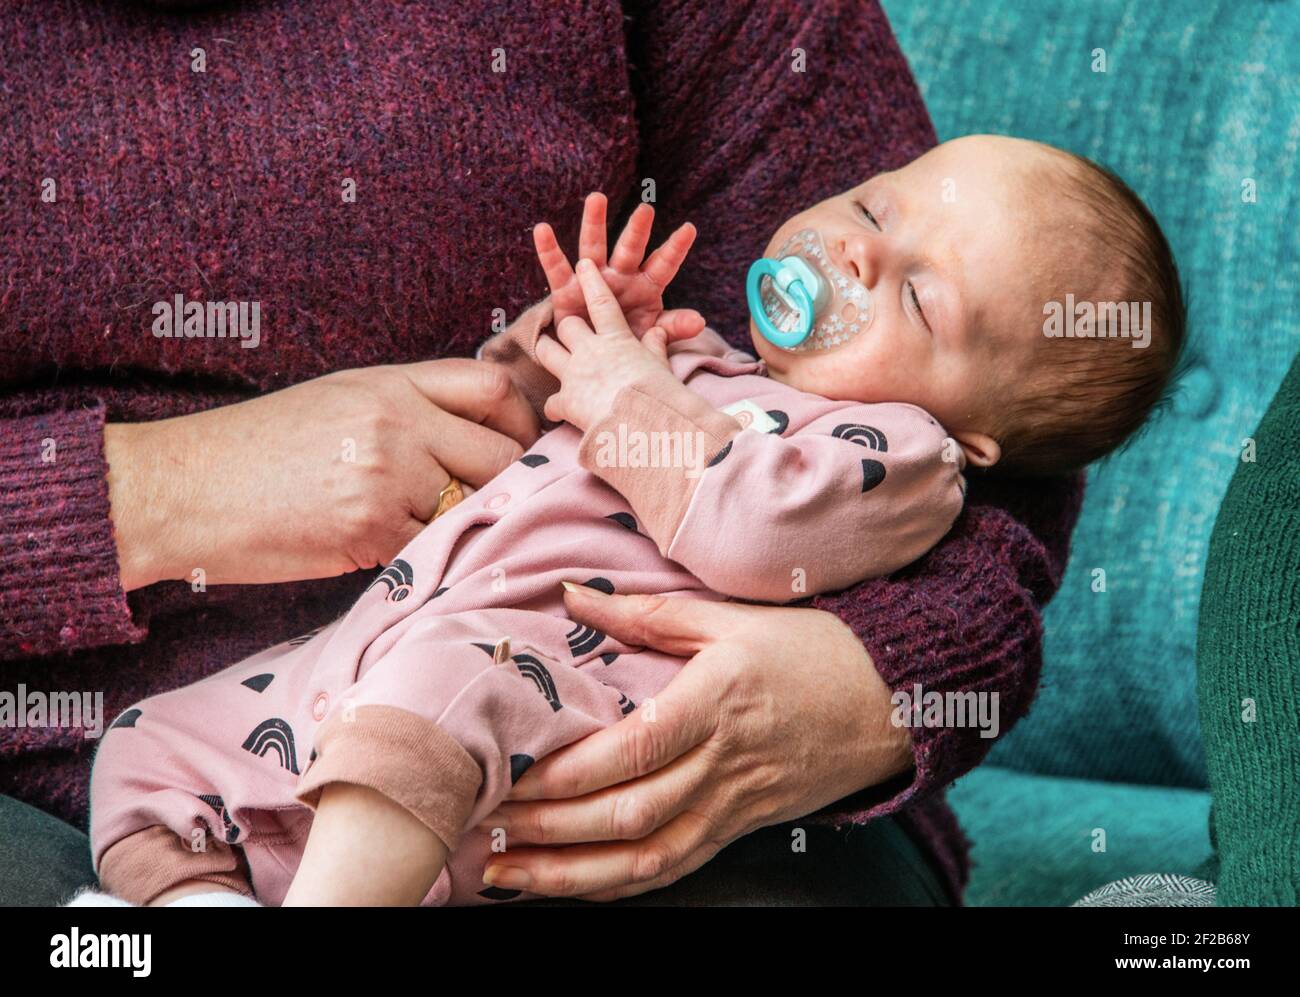 Una bambina di due mesi addormentata in braccia di nannies. Foto Stock